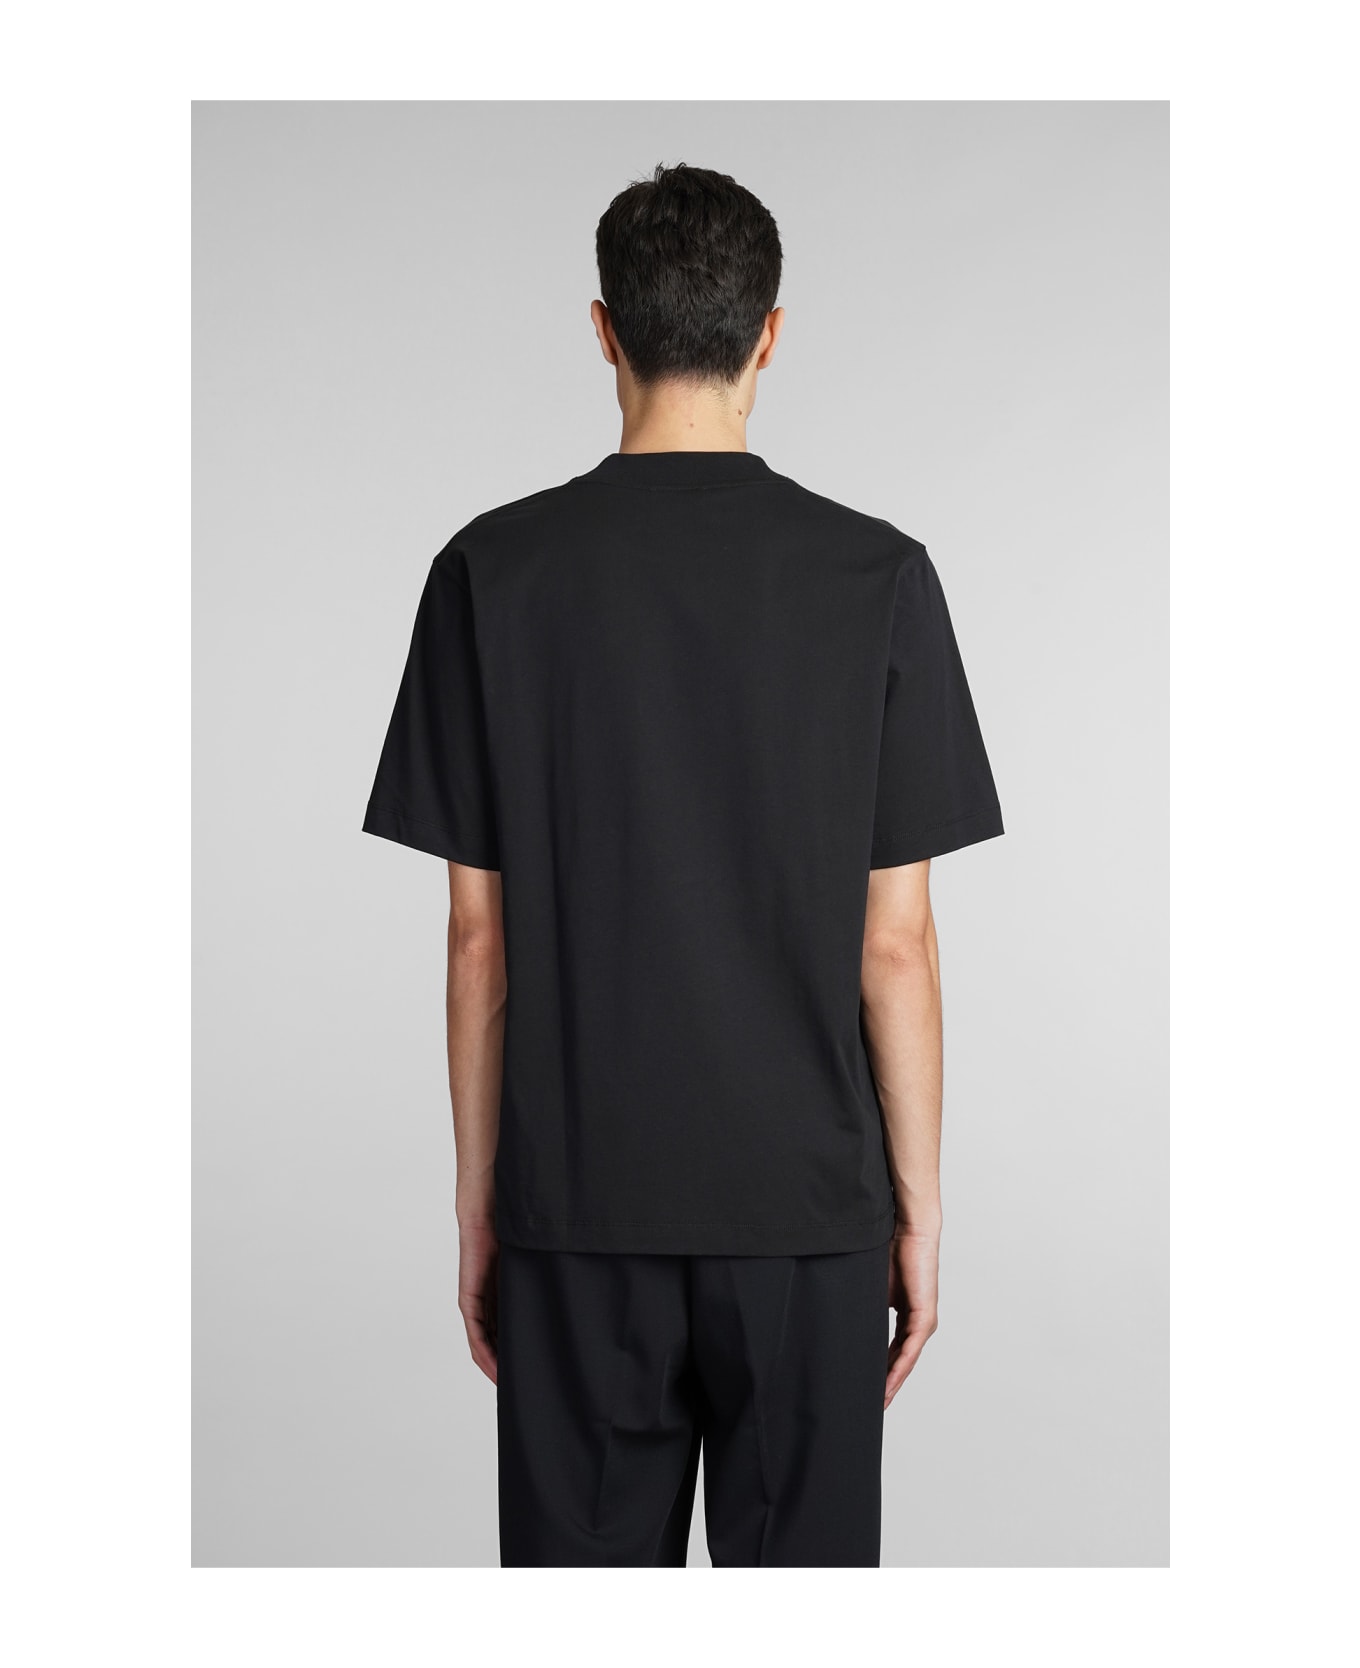 Études T-shirt In Black Cotton - black シャツ